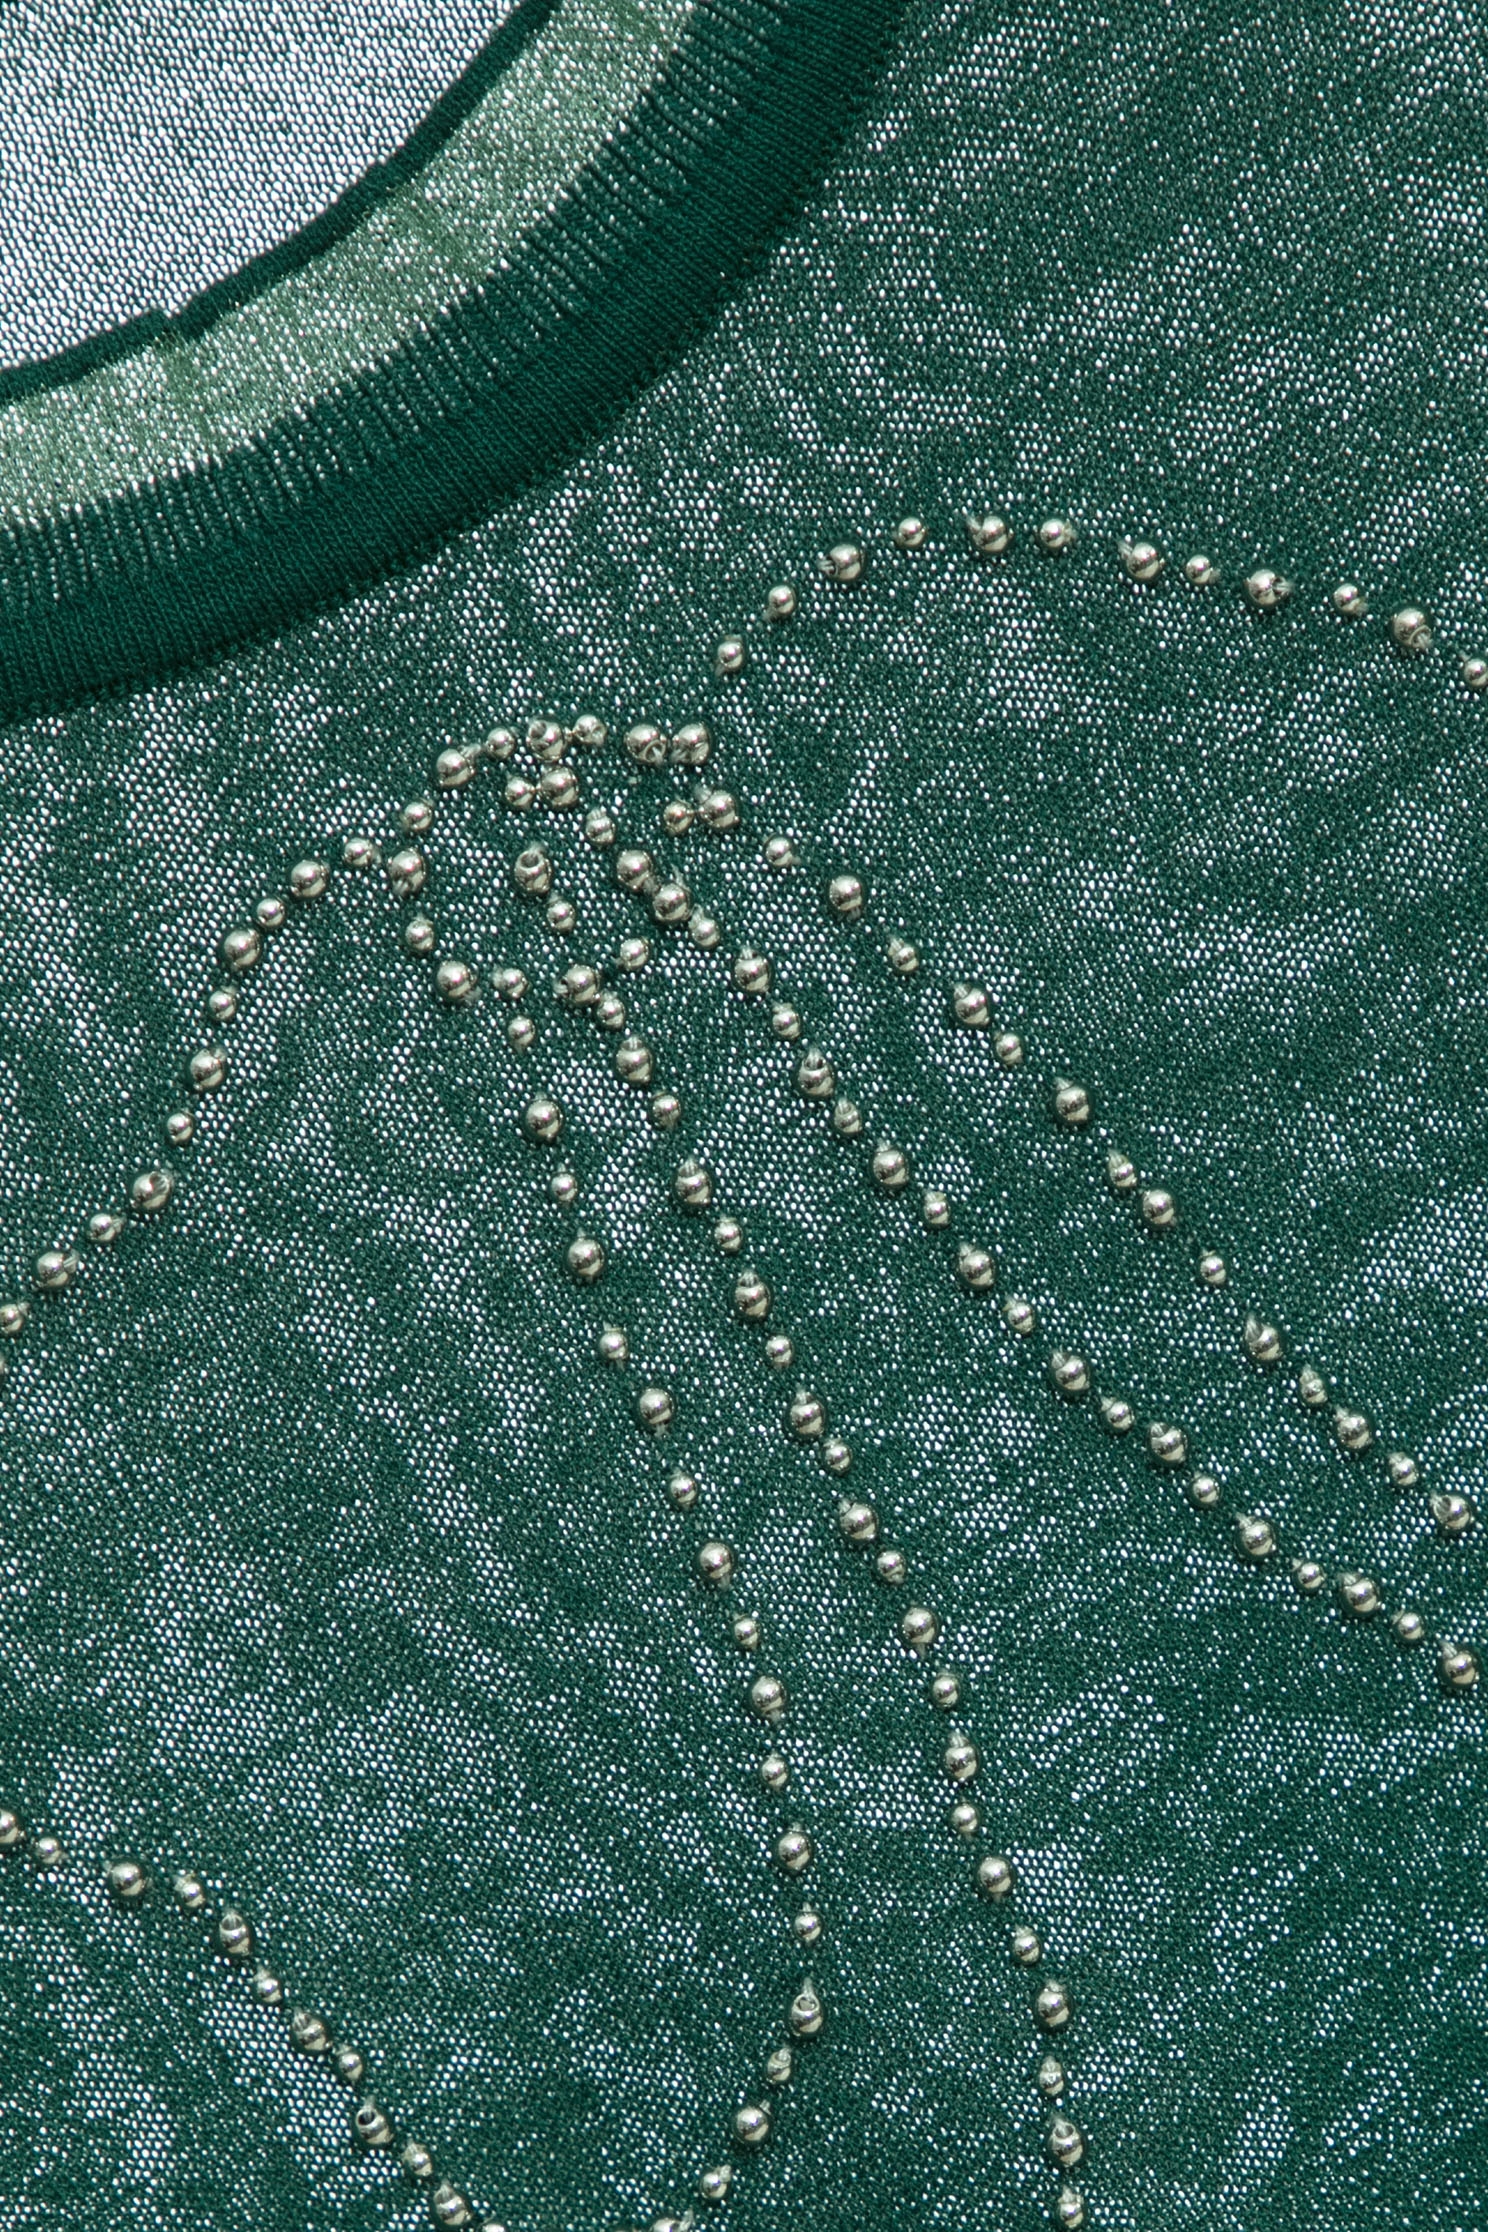 鑲珠珠銅綠色針織上衣鑲珠珠銅綠色針織上衣,上衣,人氣商品,春夏穿搭,網紗,蝴蝶結,針織,針織上衣,針織衫